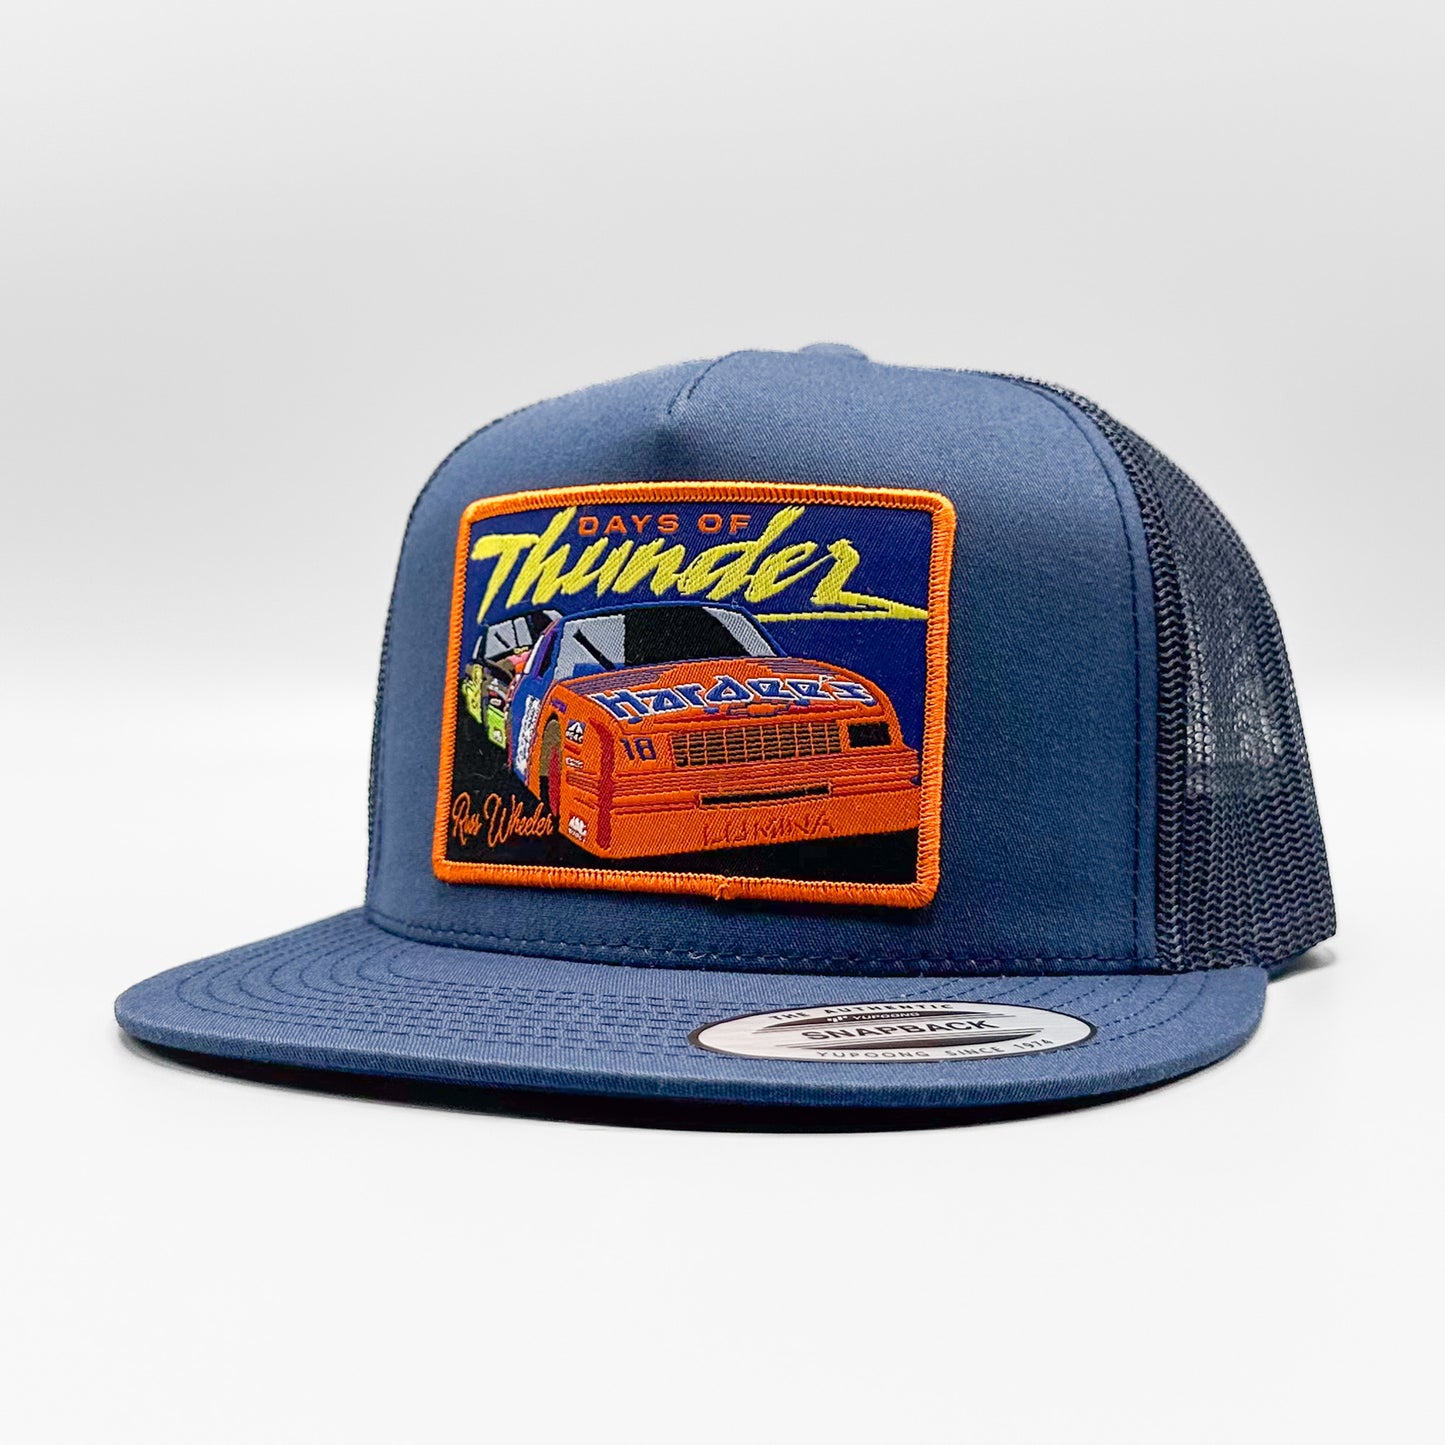 Days of Thunder Russ Wheeler Nascar Trucker Hat